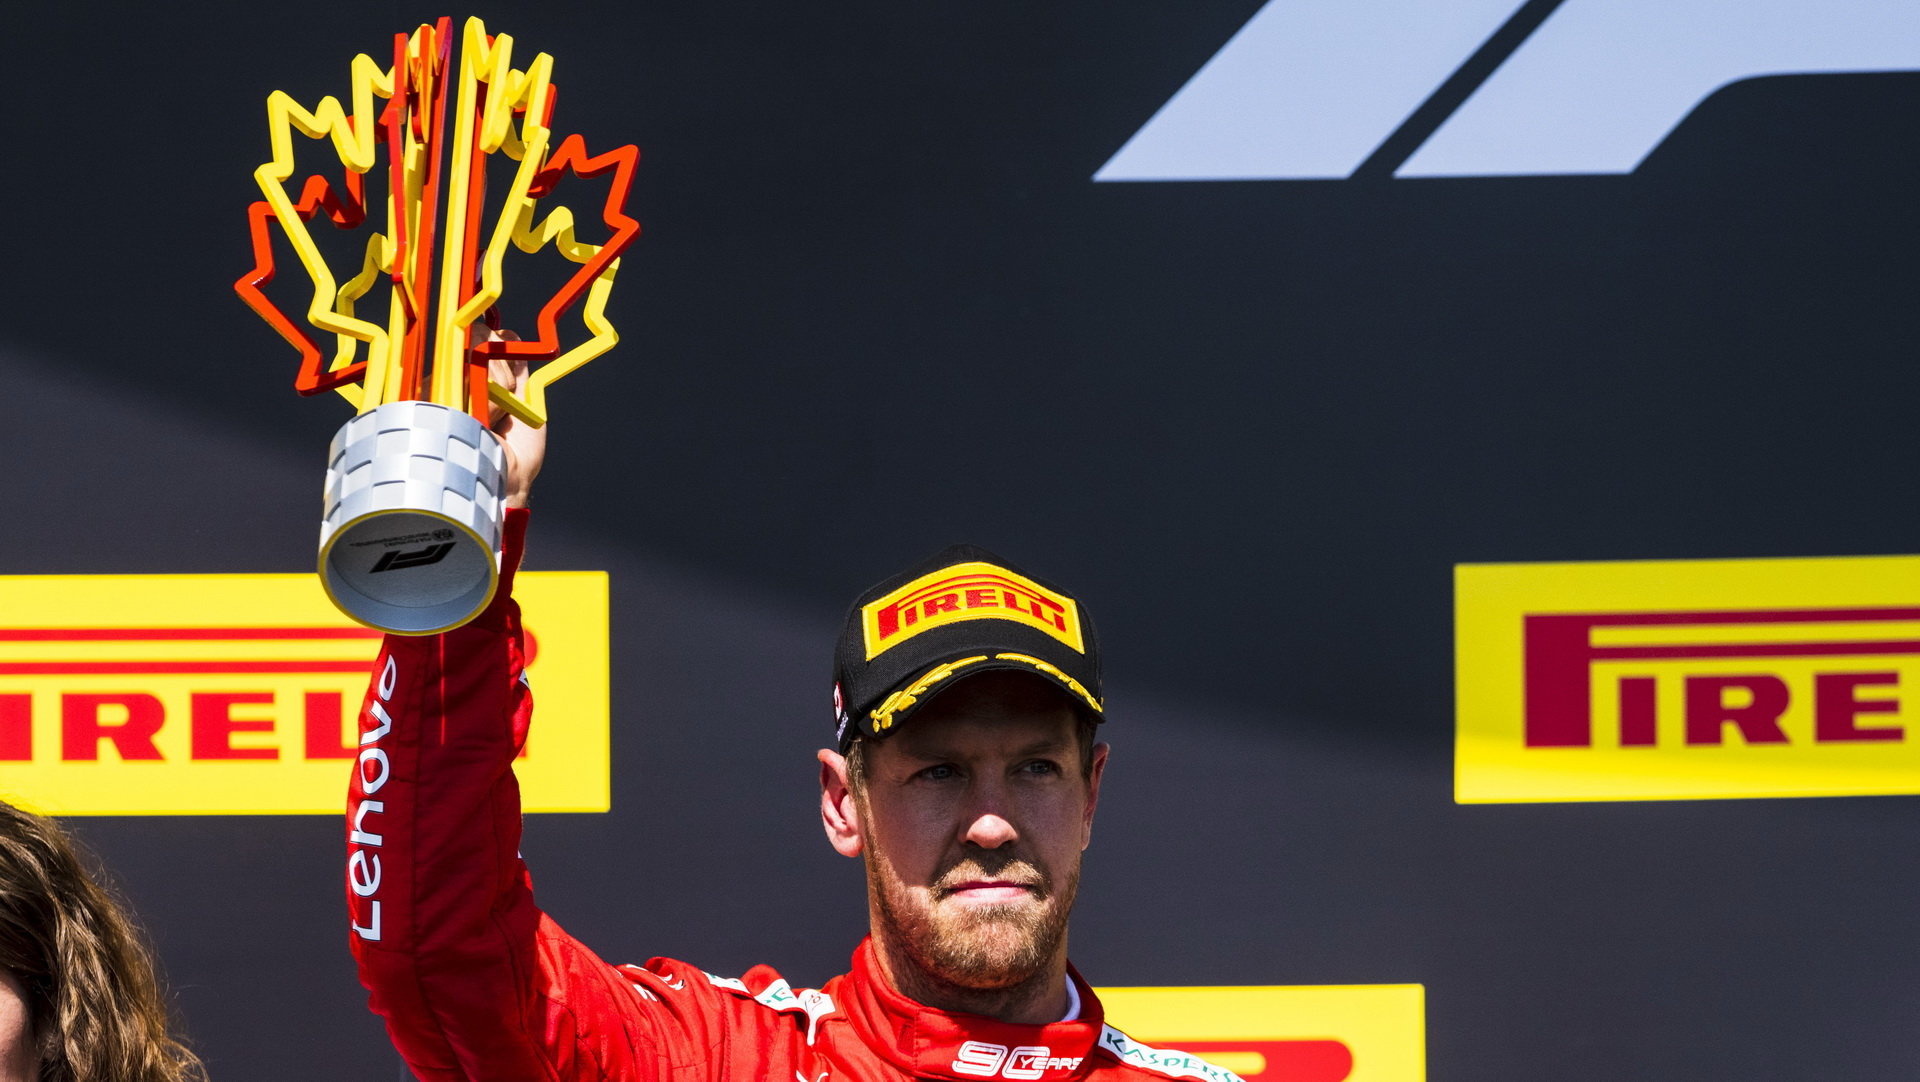 Sebastian Vettel se svou trofejí po závodě v Kanadě